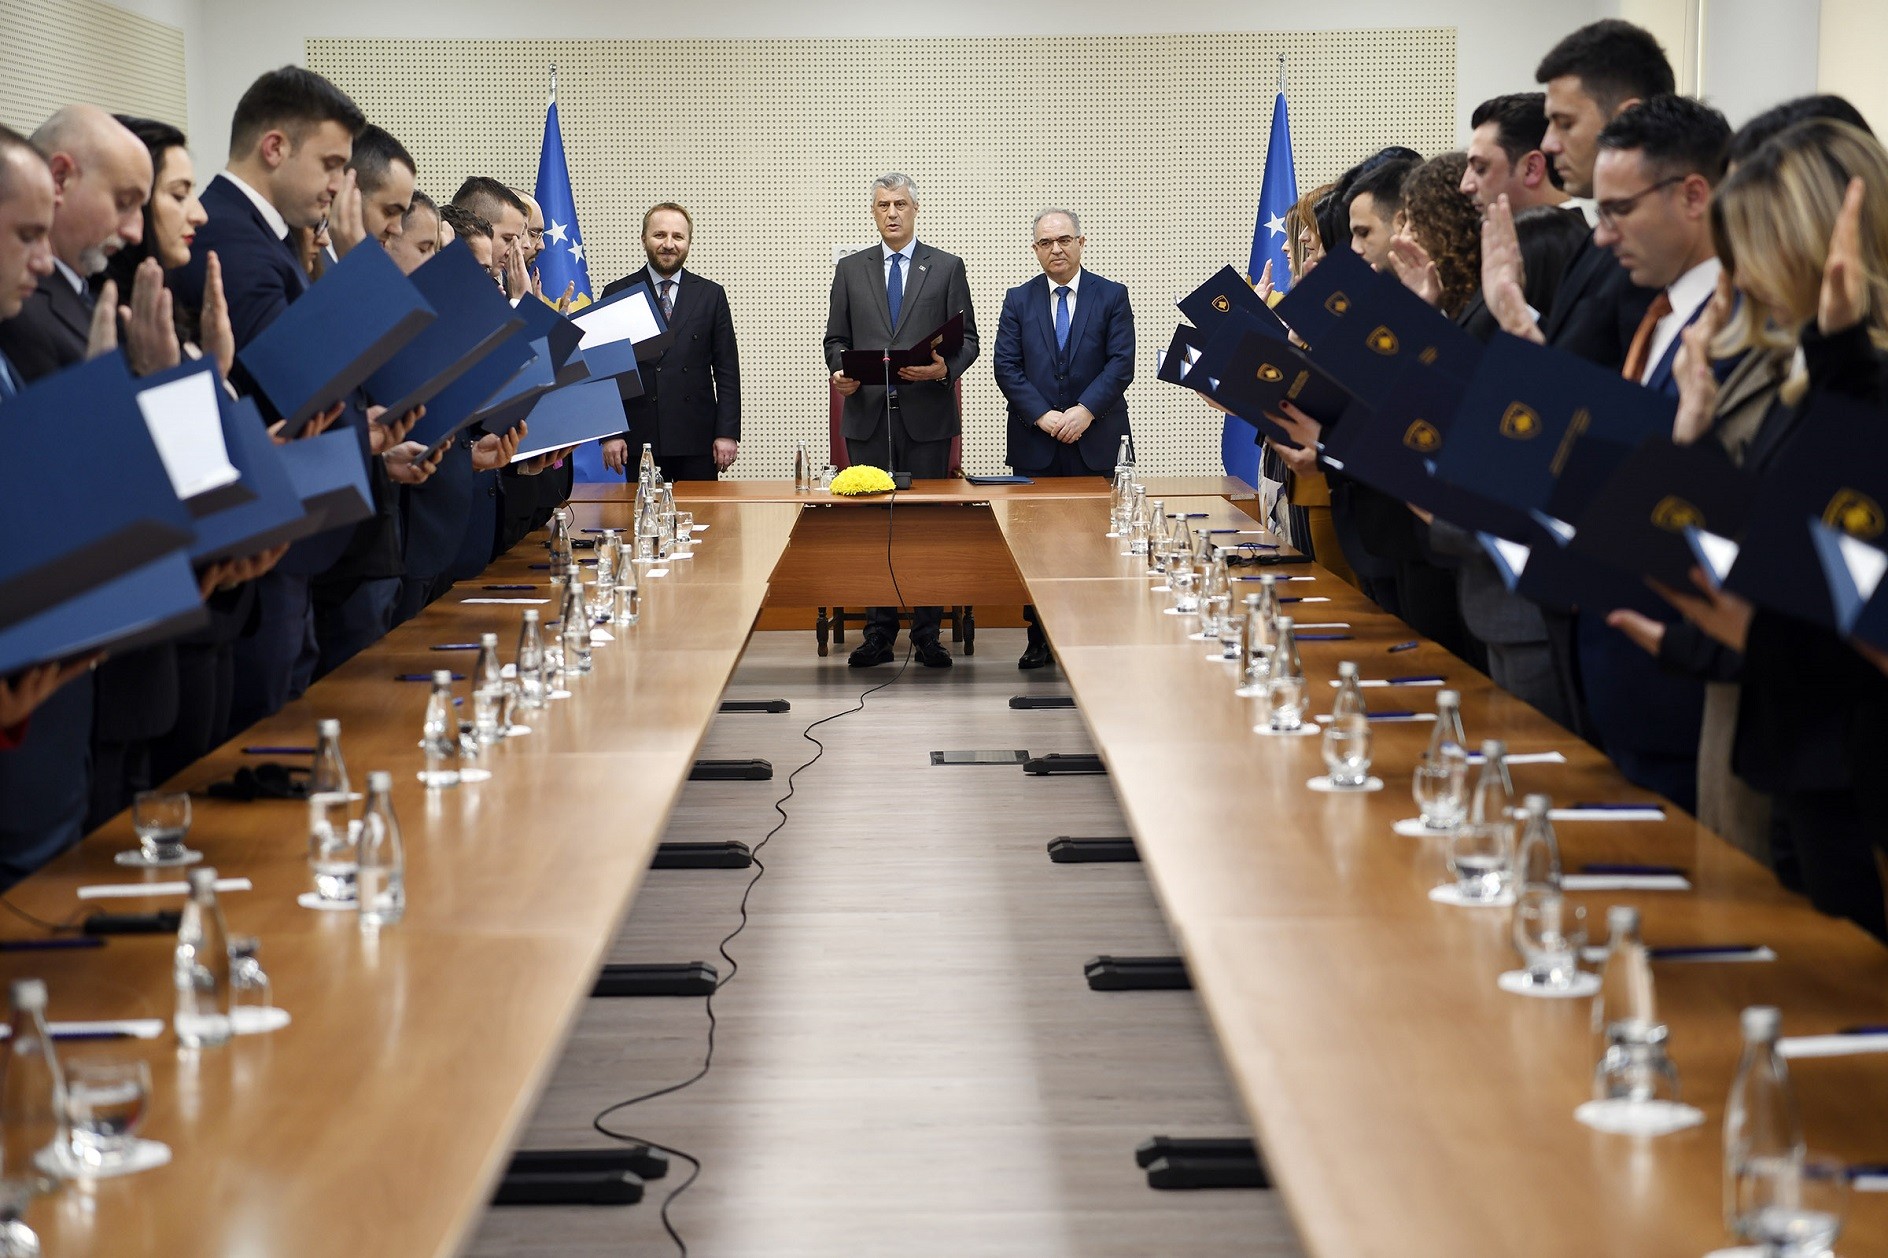 Dekretohen dhe betohen 37 gjyqtarë të rinj të Republikës së Kosovës